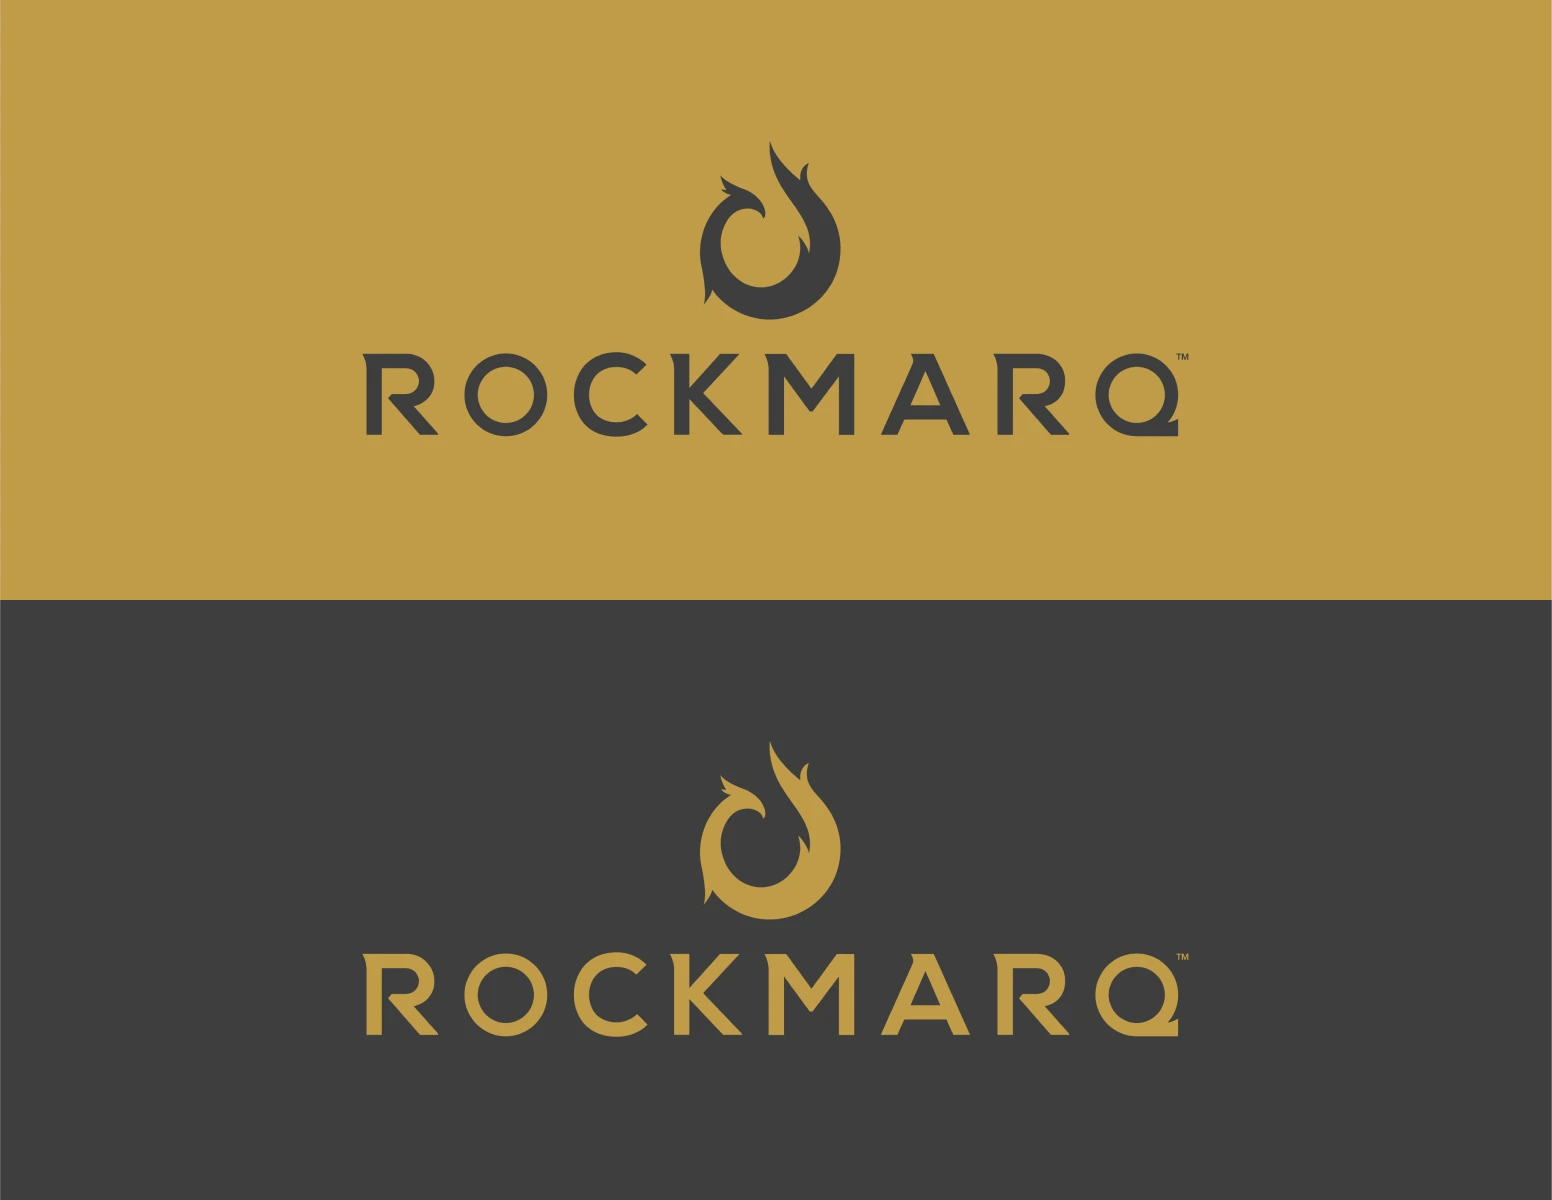 Rockmarq Variations